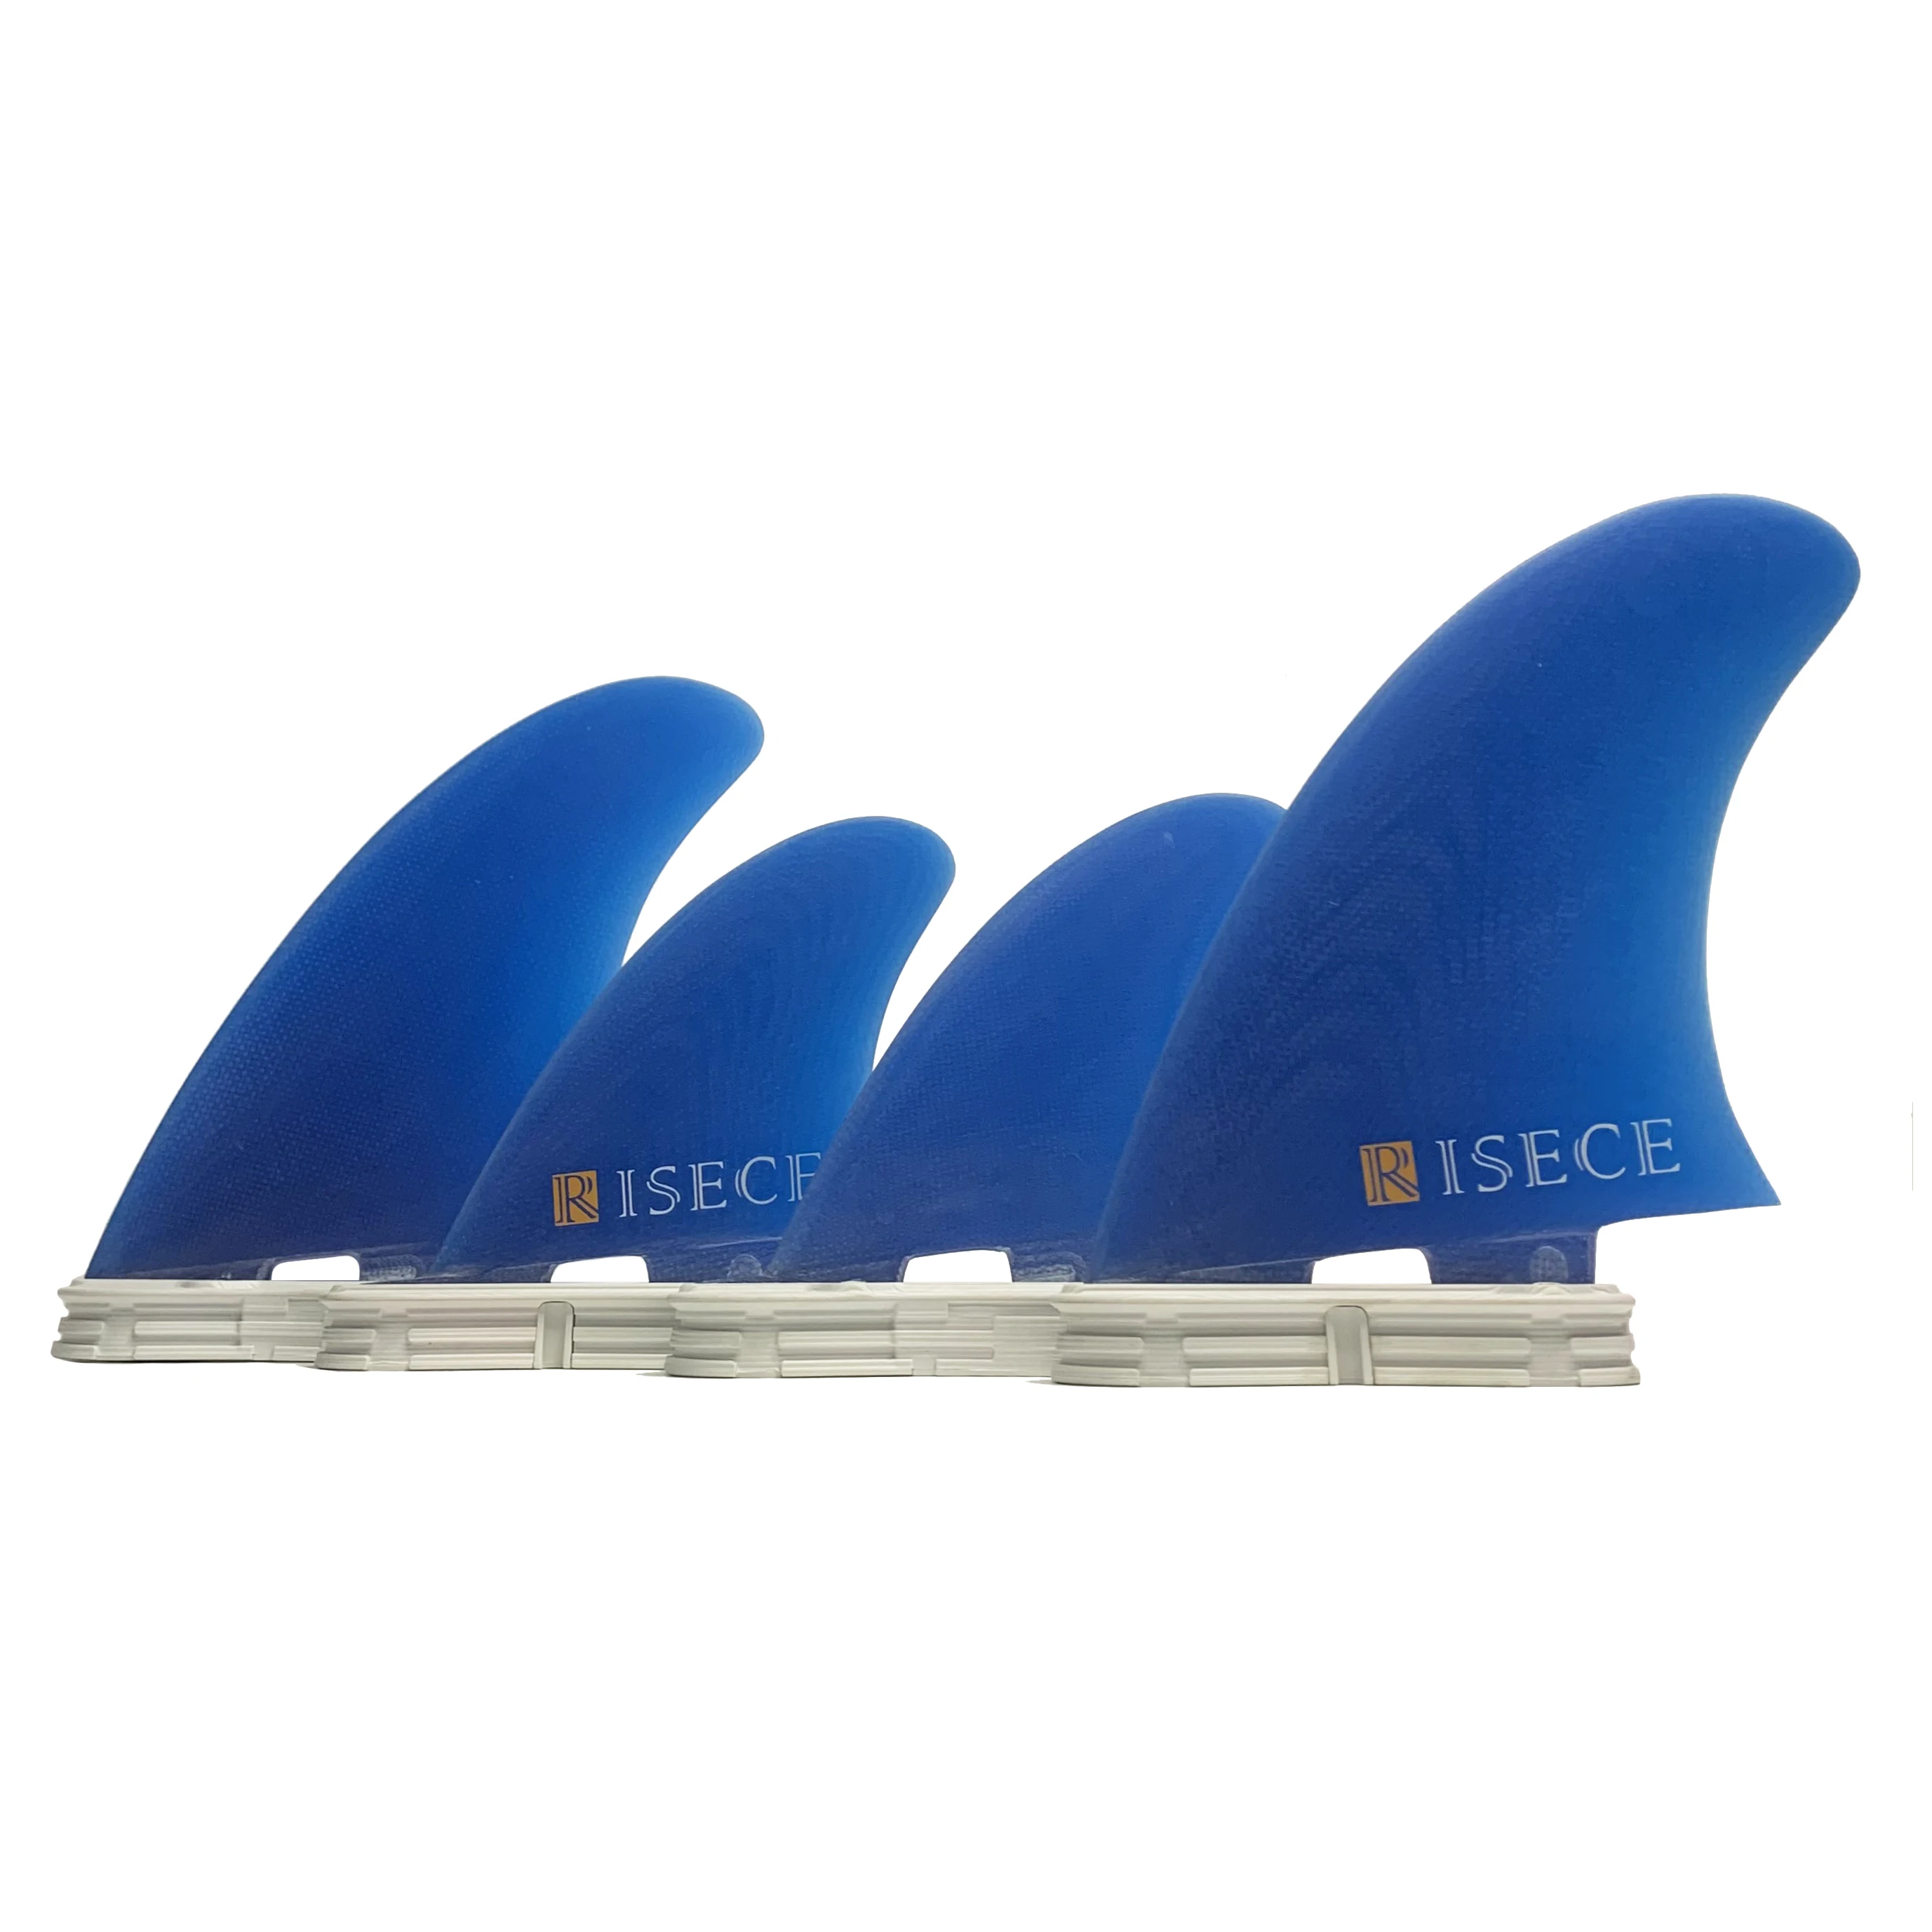 RISECE FCS 2 Четырехлопастные Плавники для доски для серфинга из Стекловолокна GFK Fiberglass Quad Surfboard Fin Single Tab Синие Плавники Из Стекловолокна 4 Штуки Quad Set Изображение 0 